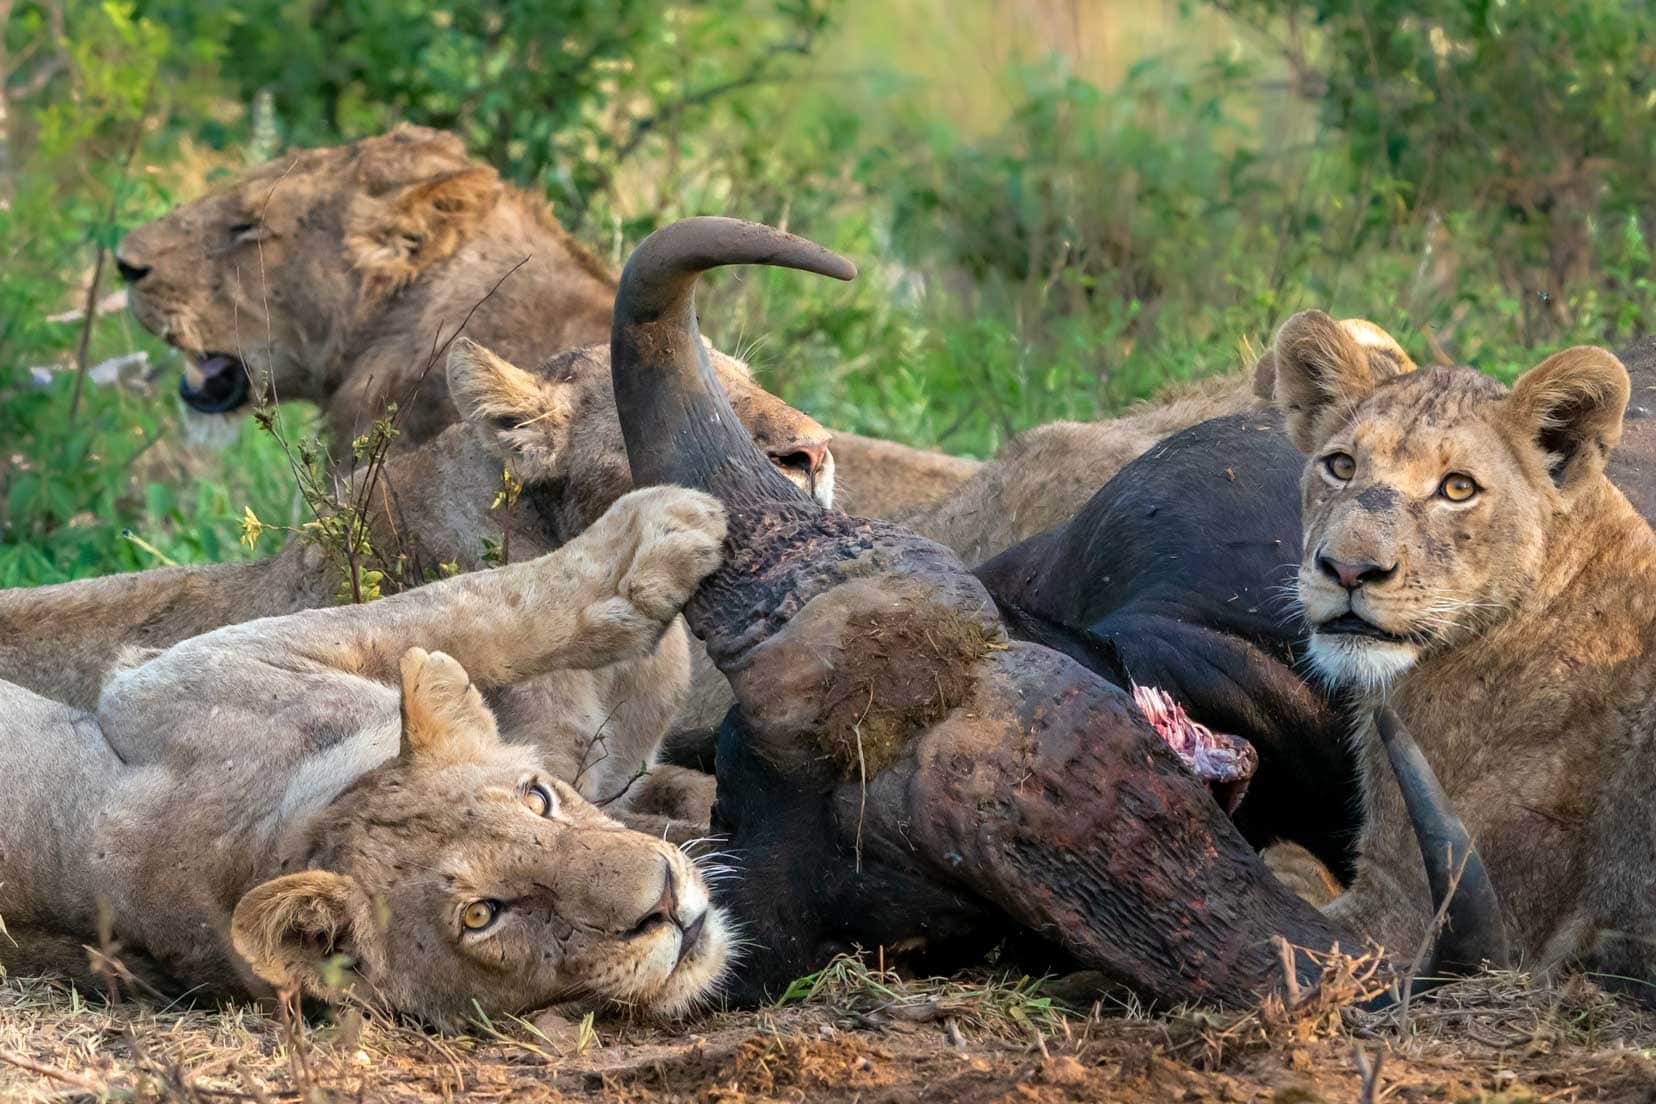 Lions eating a buffalo